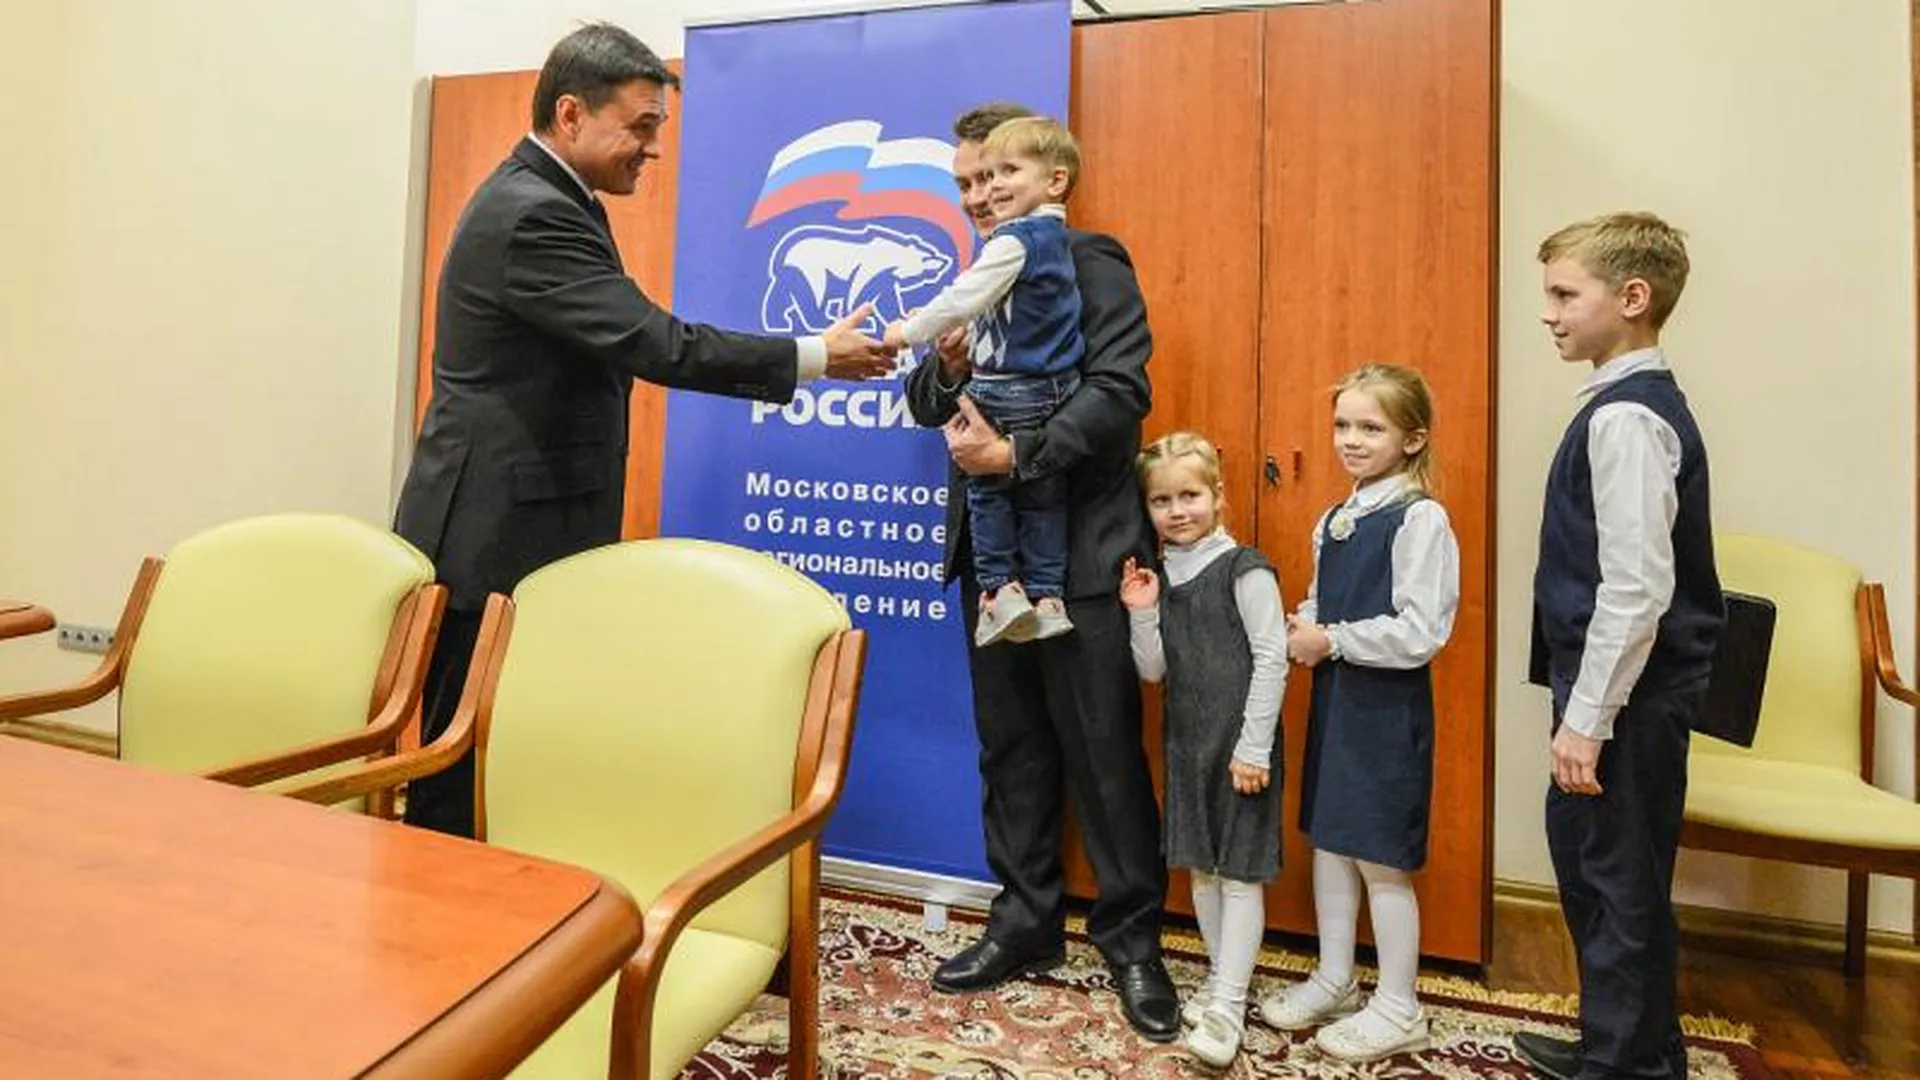  Многодетная семья из Домодедова получит микроавтобус, который попросила у губернатора